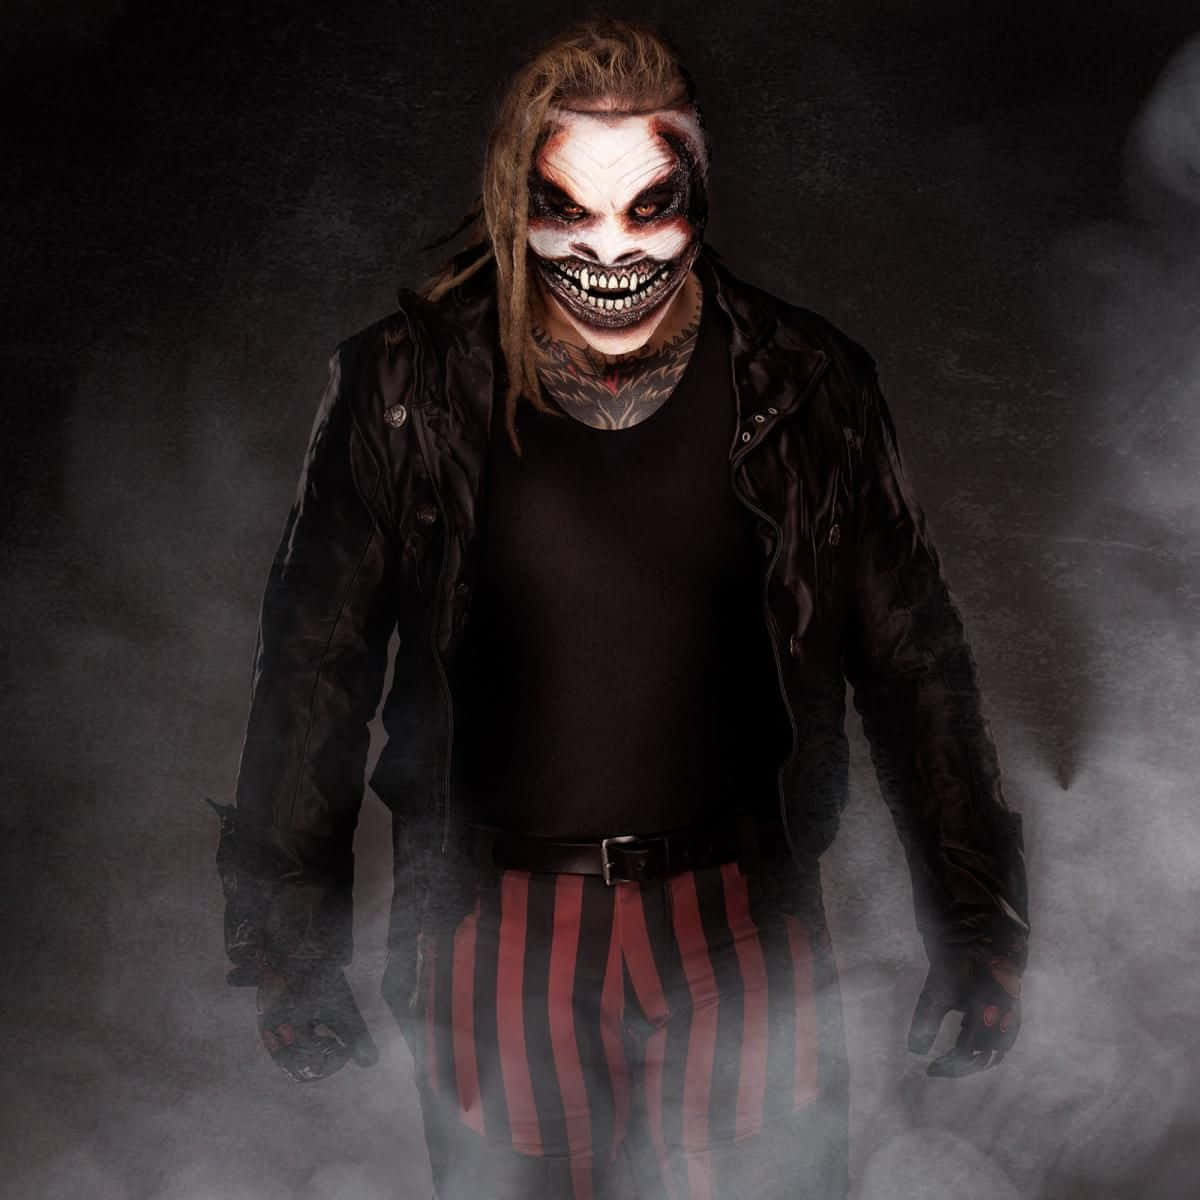 Bray Wyatt The Fiend Scary Look WWE Wallpaper